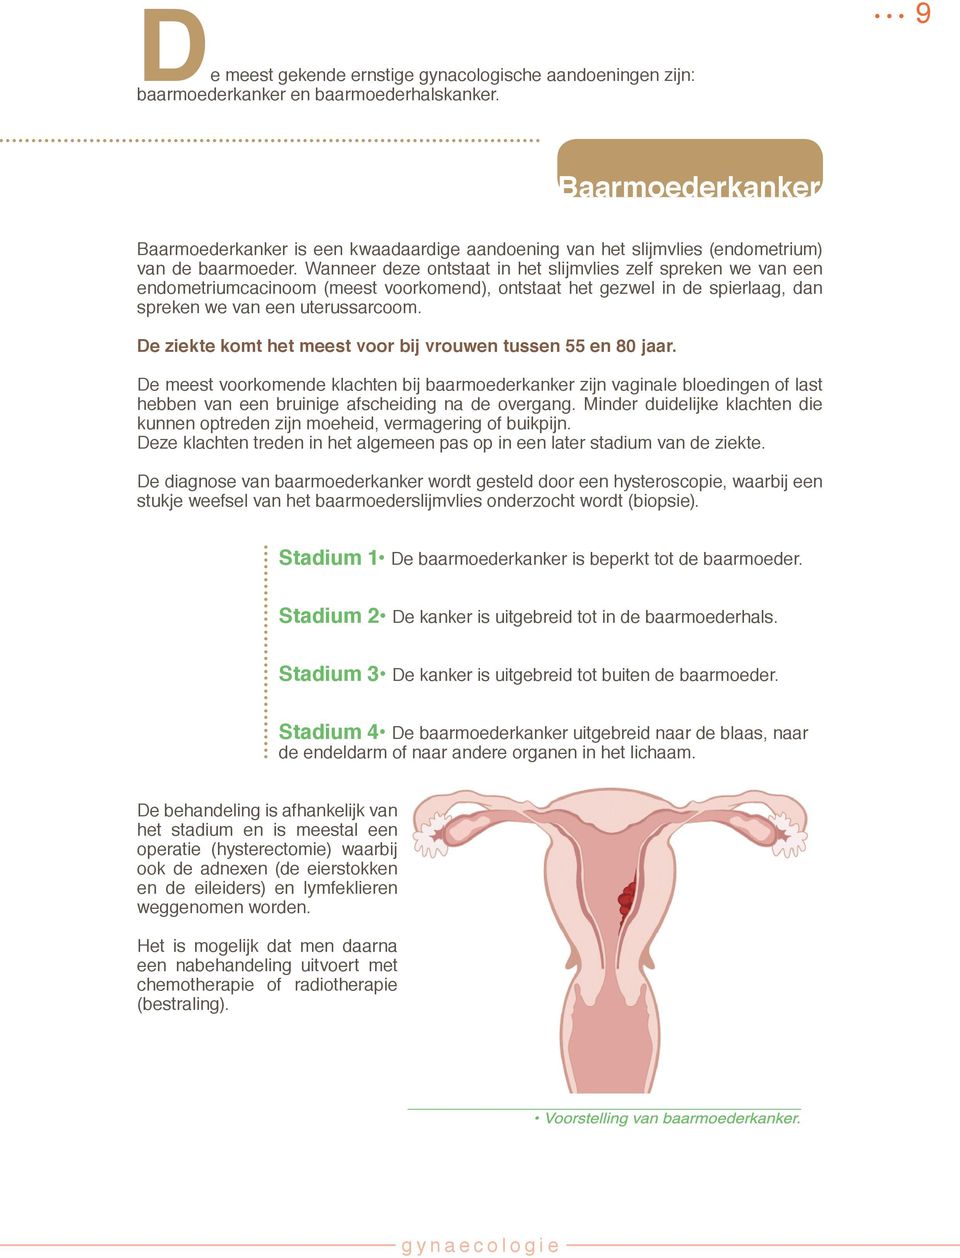 Wanneer deze ontstaat in het slijmvlies zelf spreken we van een endometriumcacinoom (meest voorkomend), ontstaat het gezwel in de spierlaag, dan spreken we van een uterussarcoom.